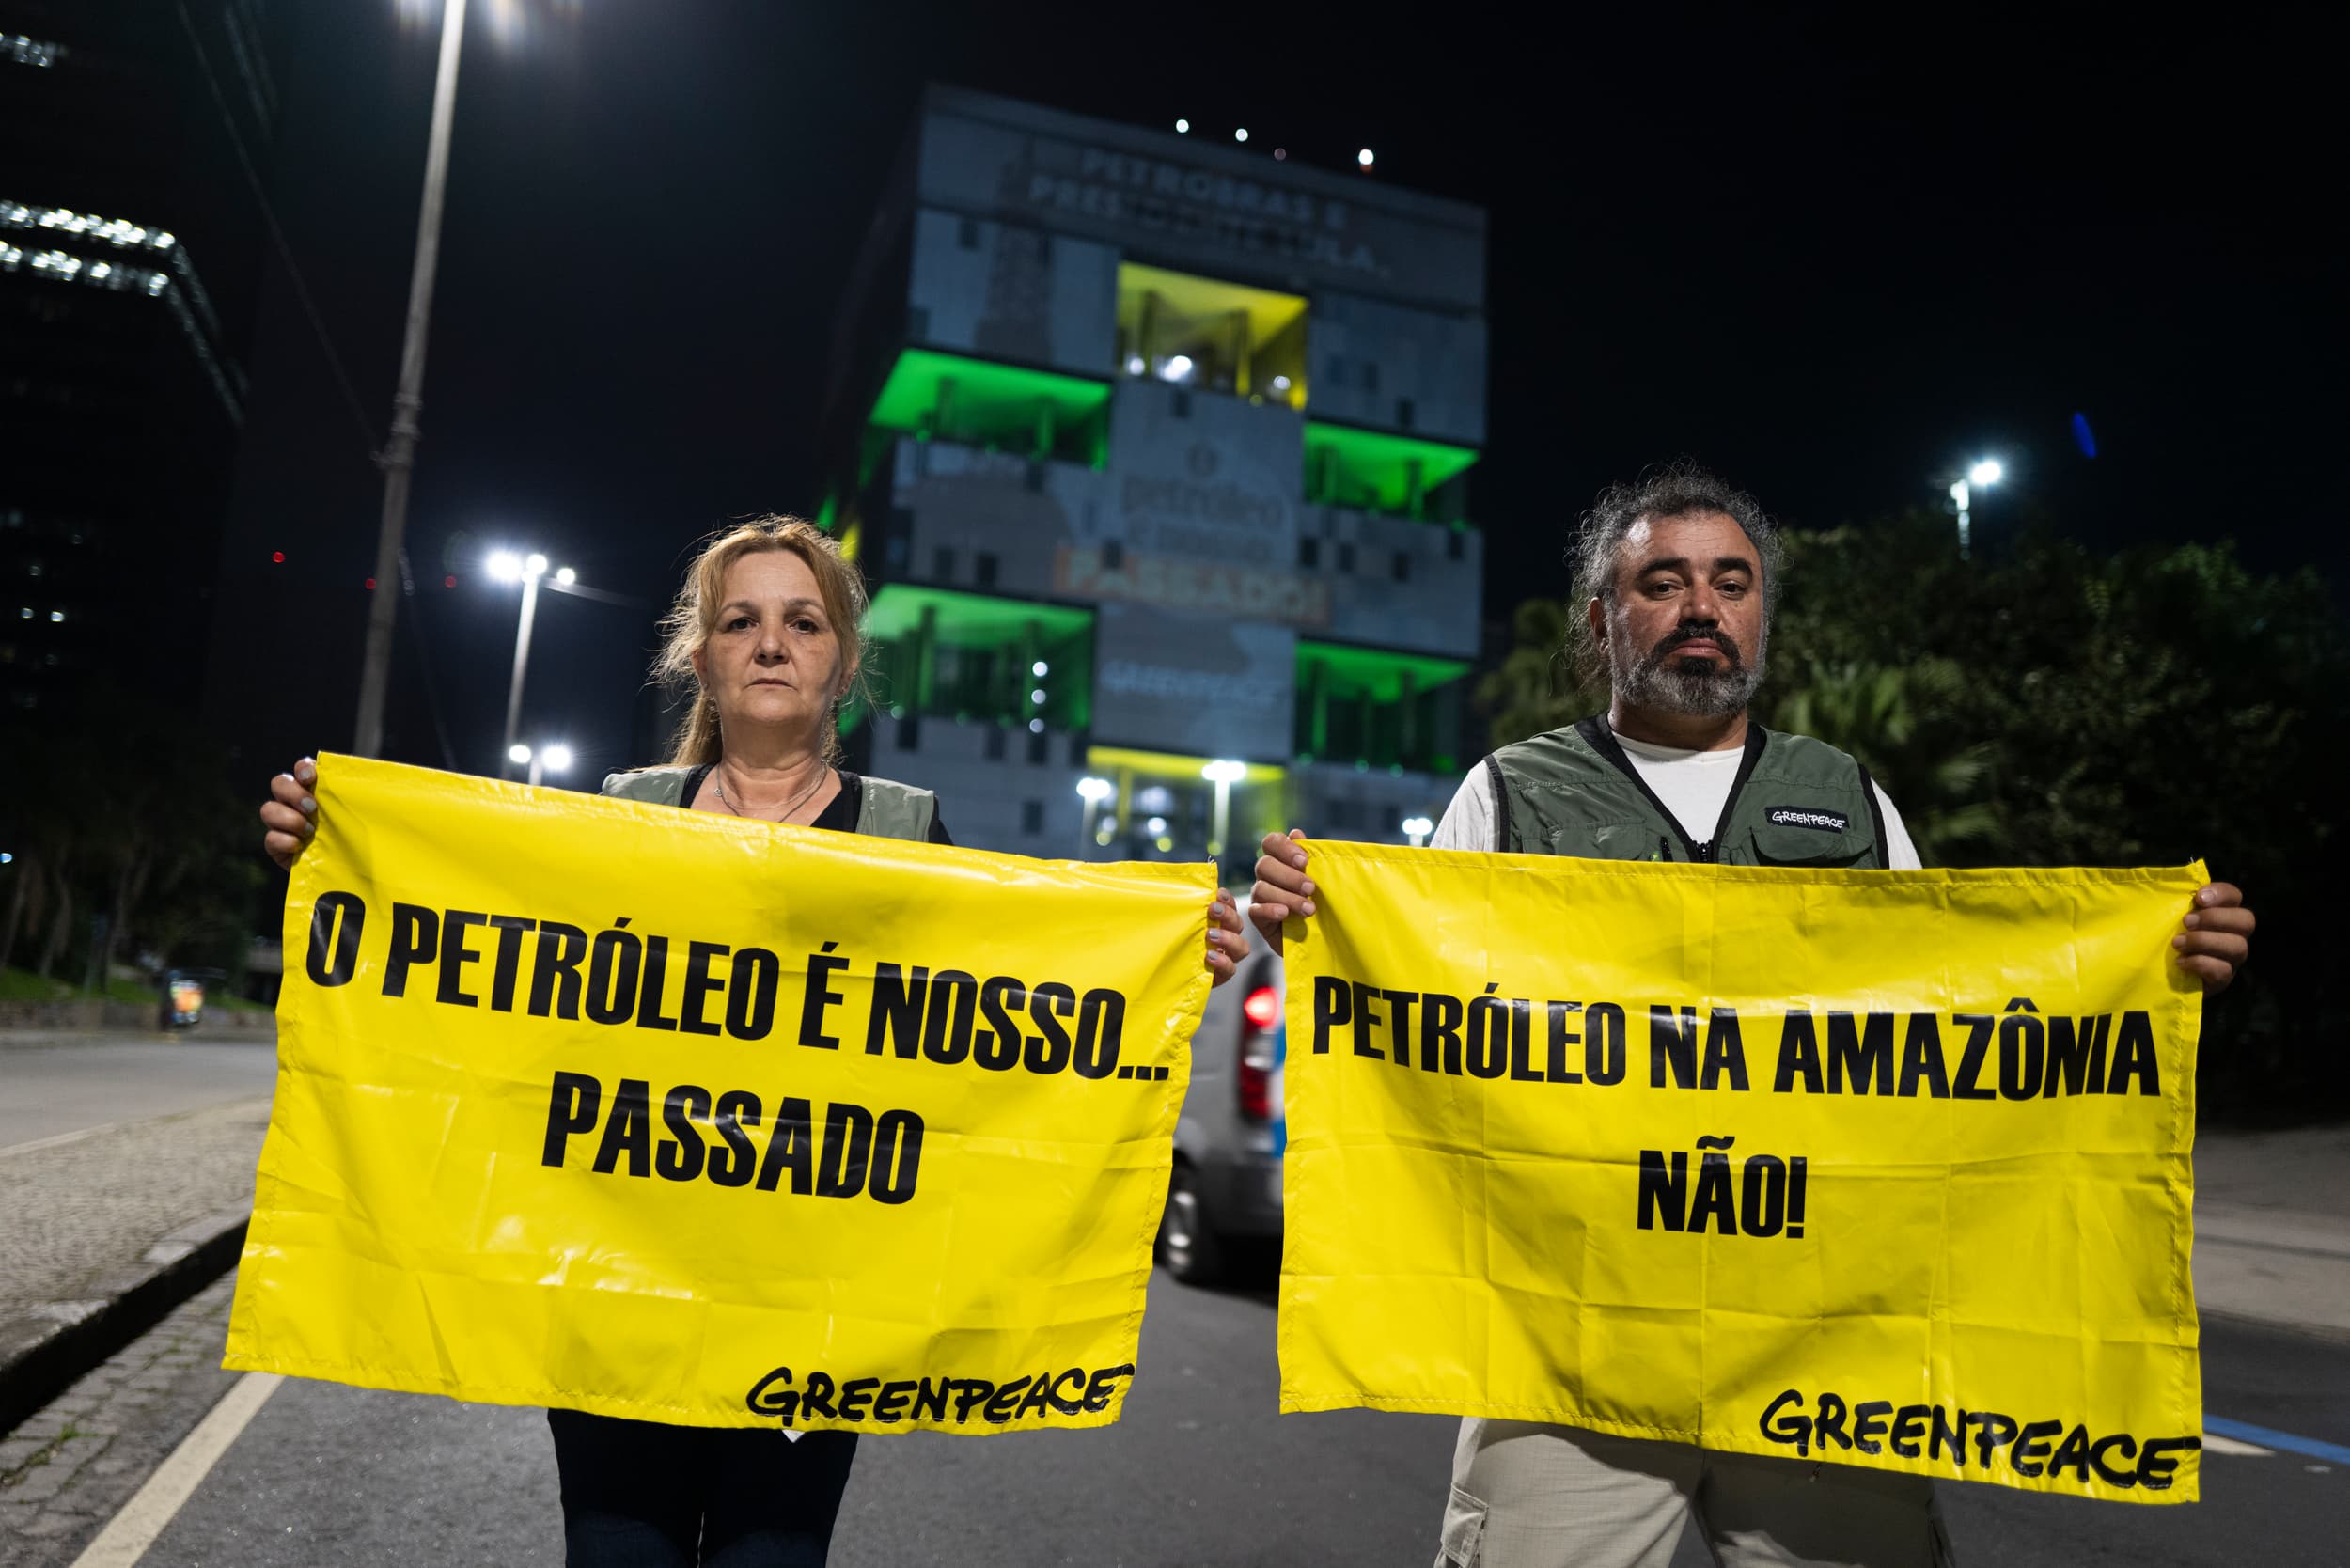 “Petróleo na Amazônia Não!”: mais de 60 organizações assinam pedido direcionado aos líderes globais